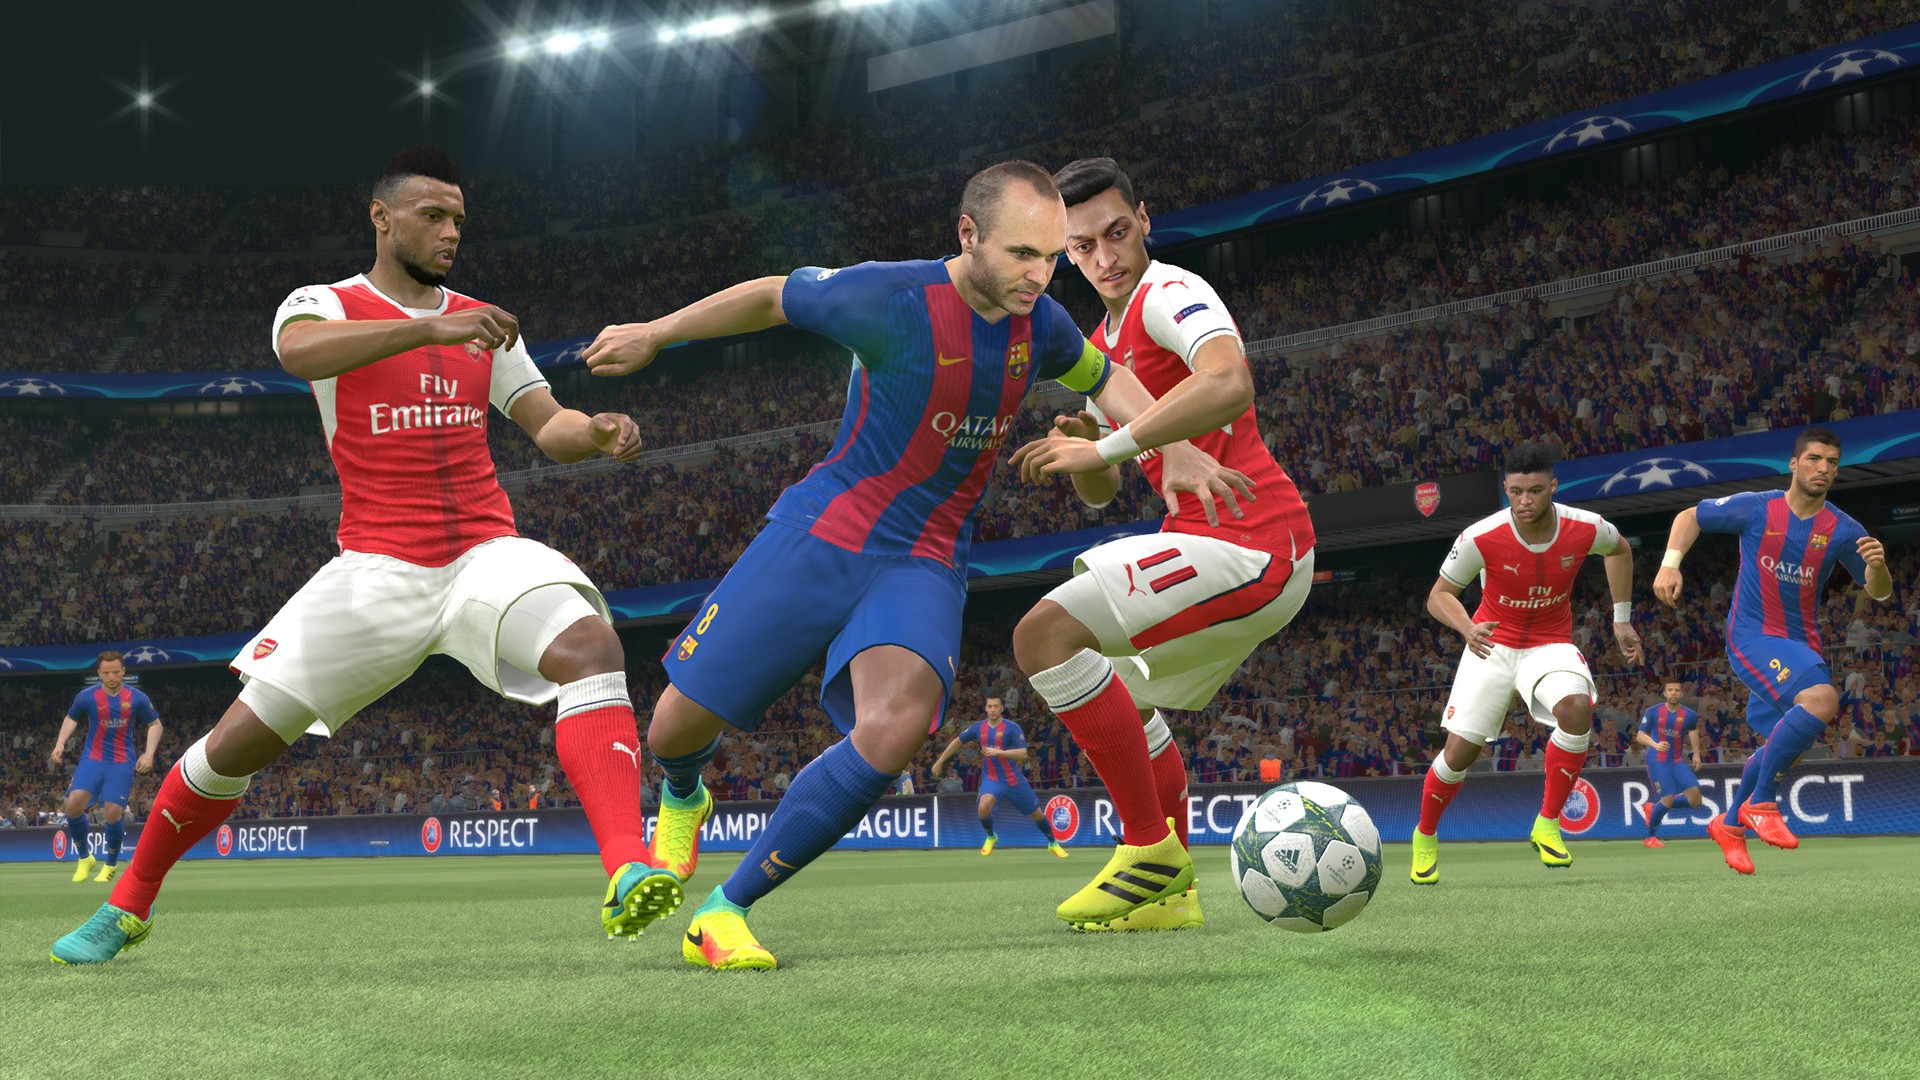 بازی PES 2017، کرک FitGirl همراه آخرین آپدیت و پچ (برای کامپیوتر) - Pro  Evolution Soccer 2017 PC Game